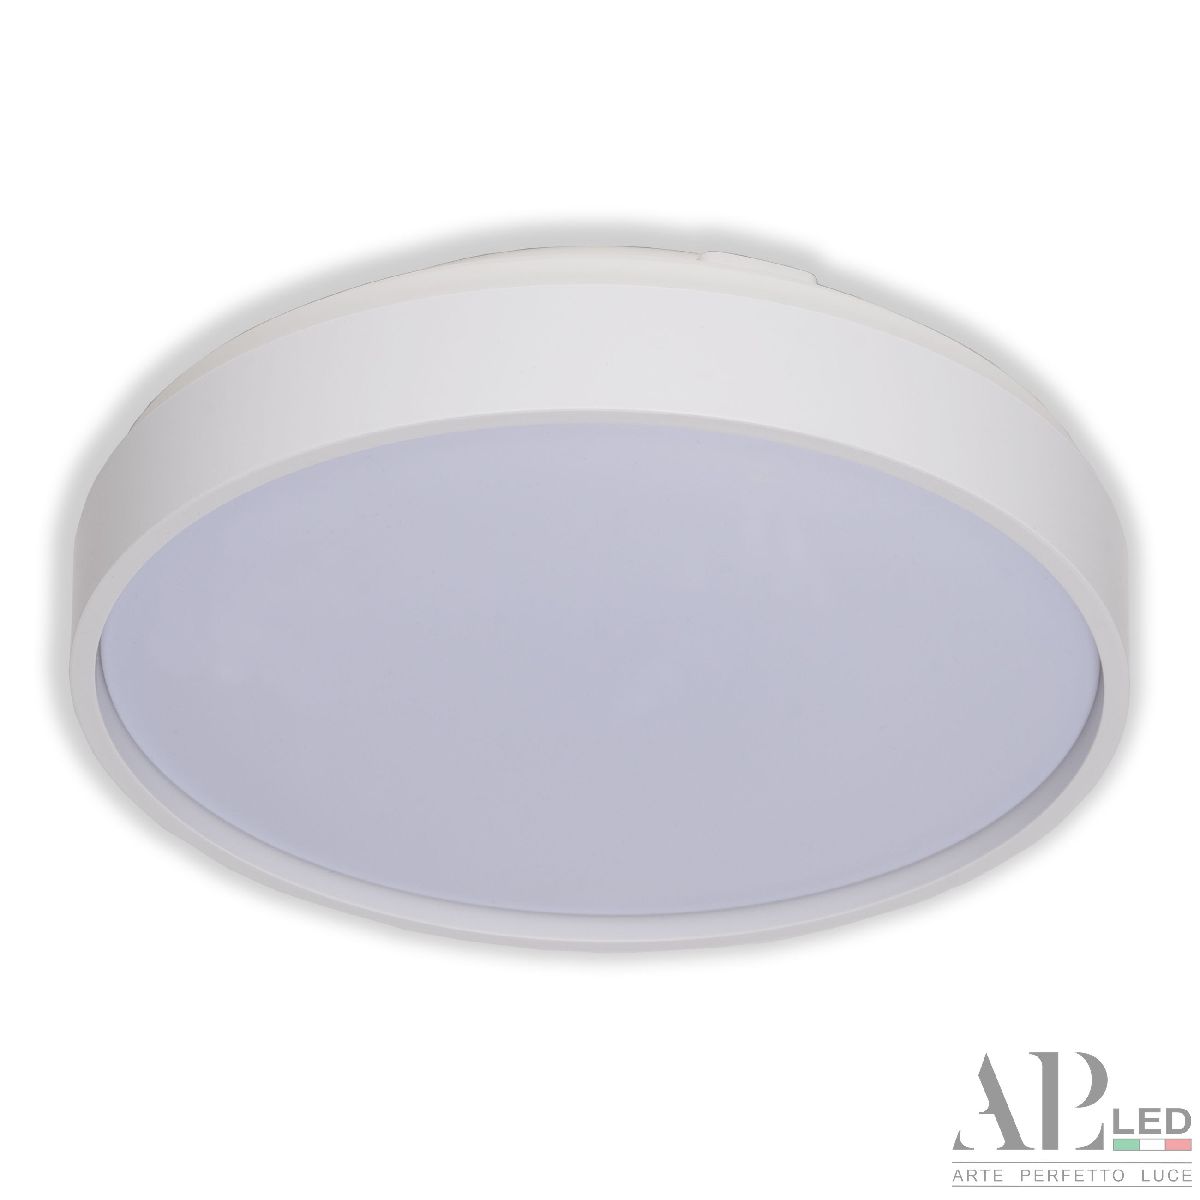 Потолочный светильник Arte Perfetto Luce Toscana 3315.XM302-1-267/12W/3K White TD